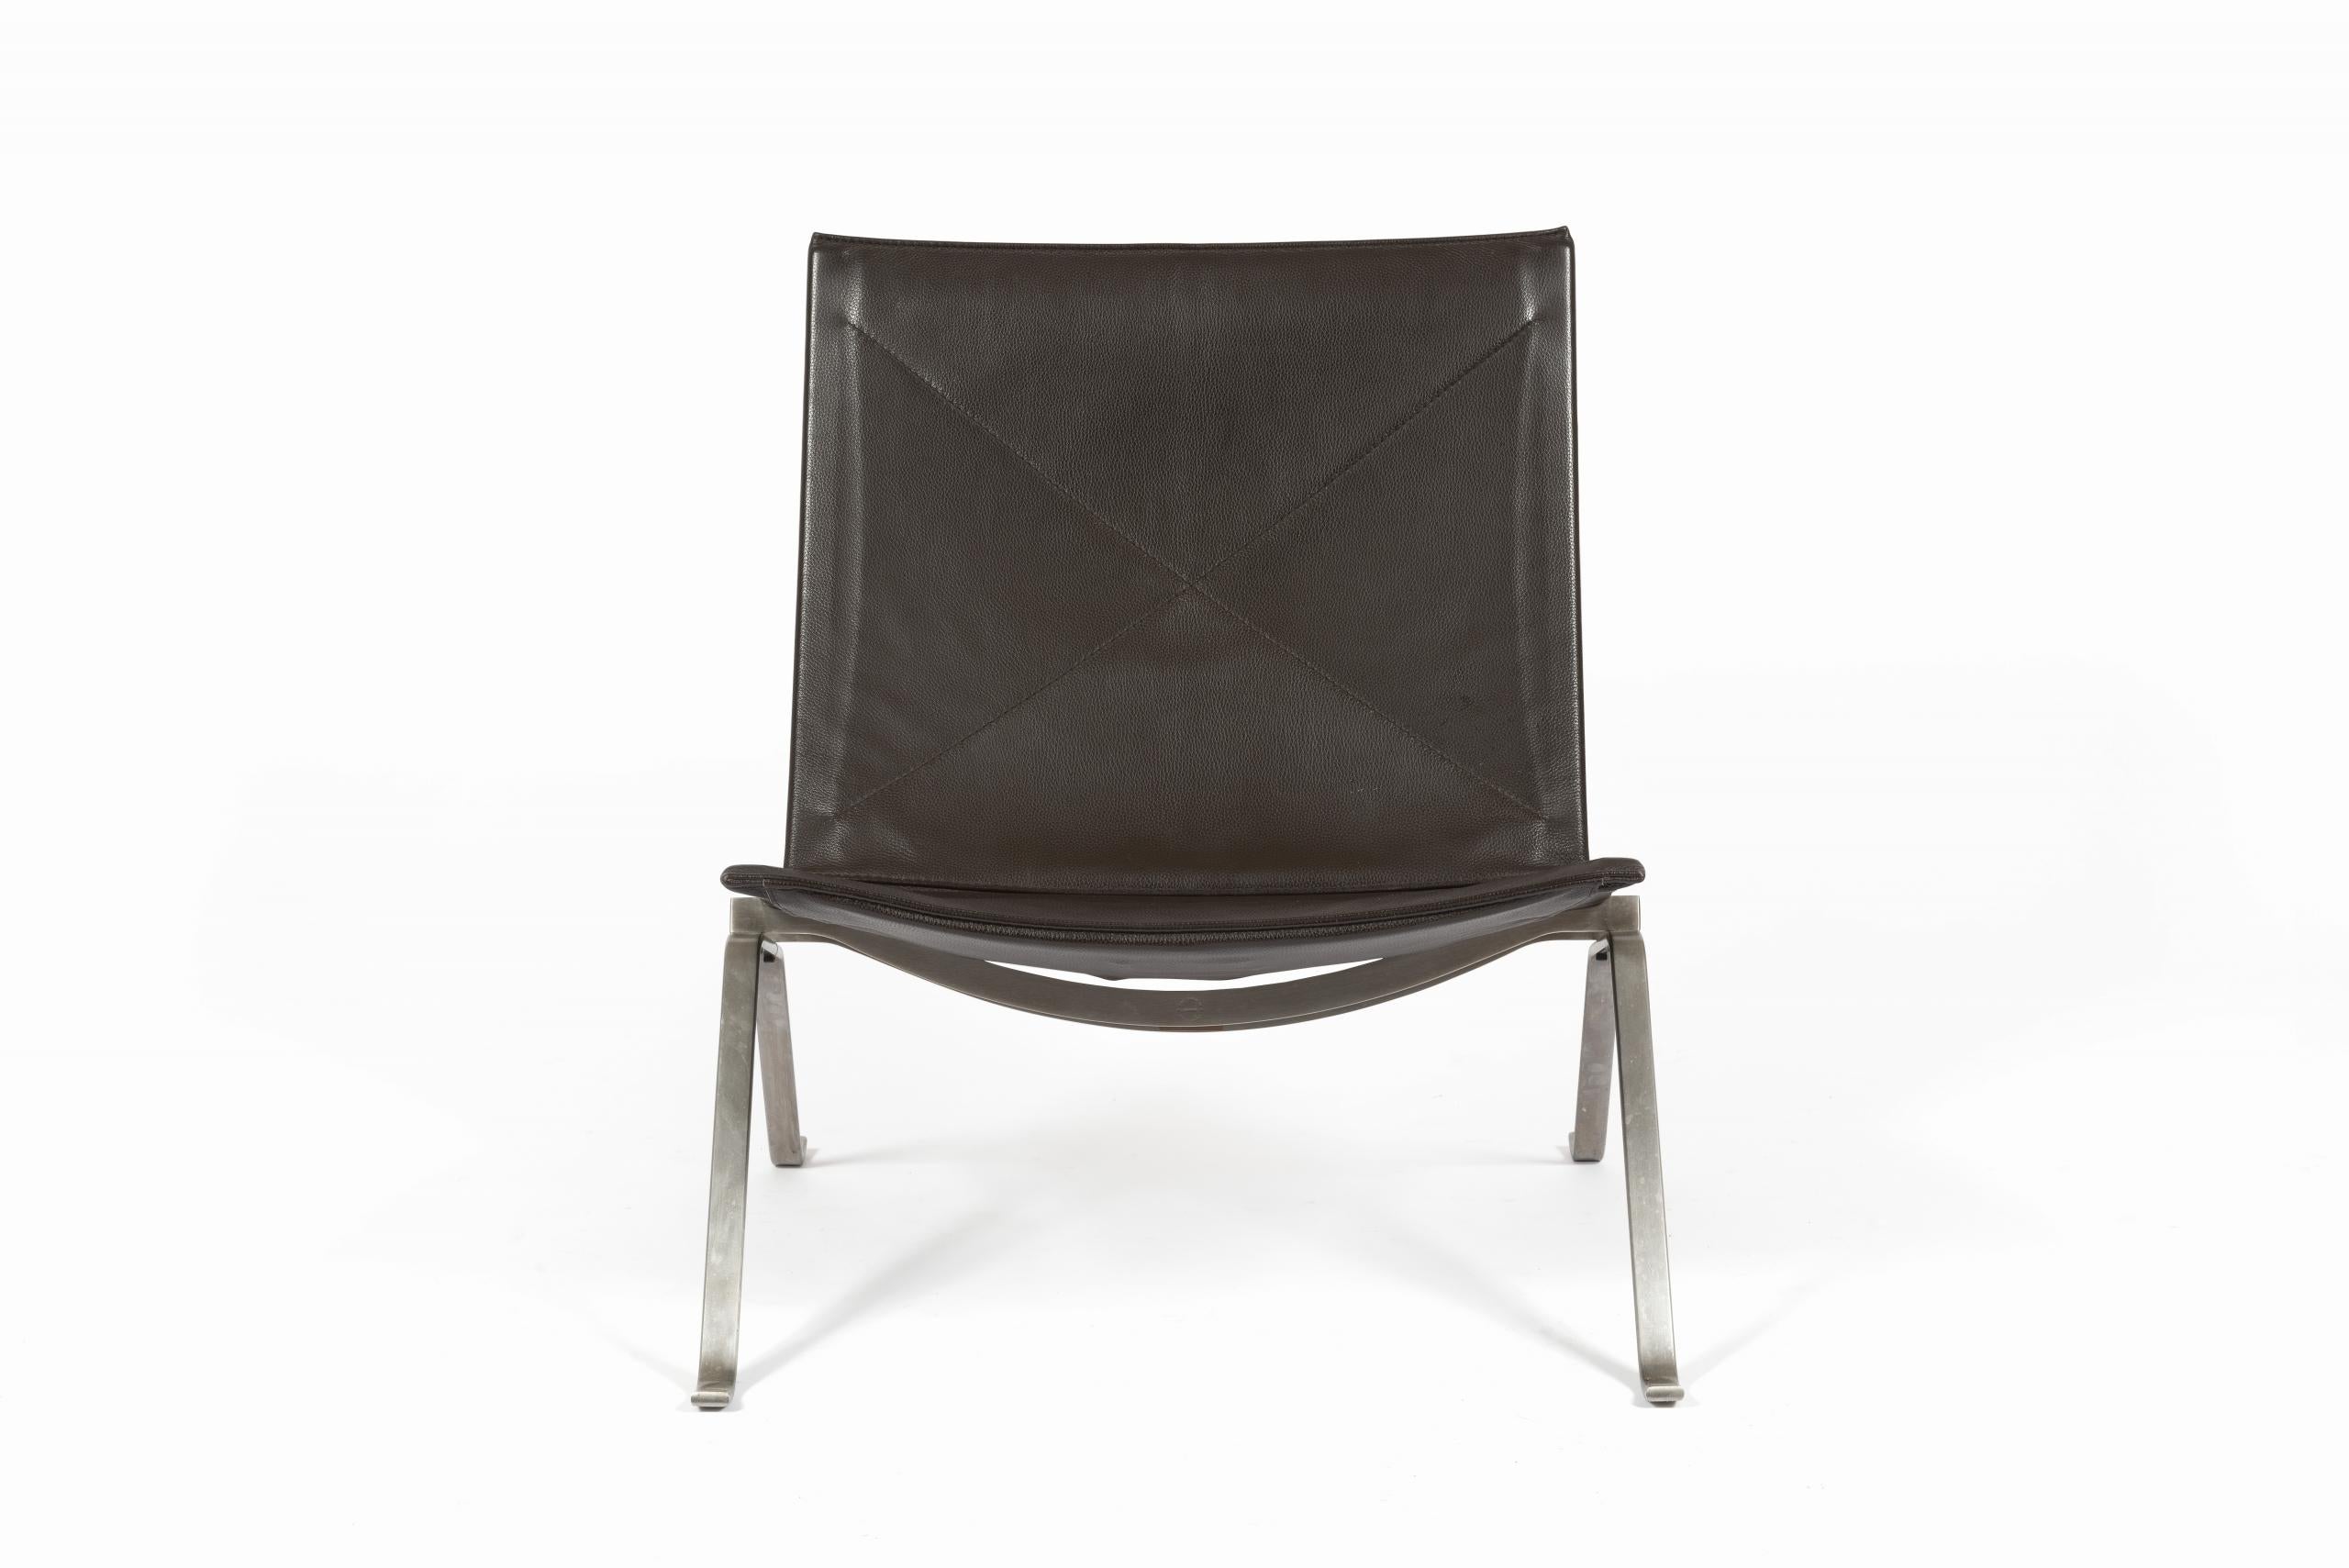 Fauteuil Lounge en cuir brun foncé, conçu par Poul Kjærholm pour Fritz Hansen, Danemark, édition 2012.

Le cadre en acier brossé massif est estampillé du logo Fritz Hansen sous l'assise.